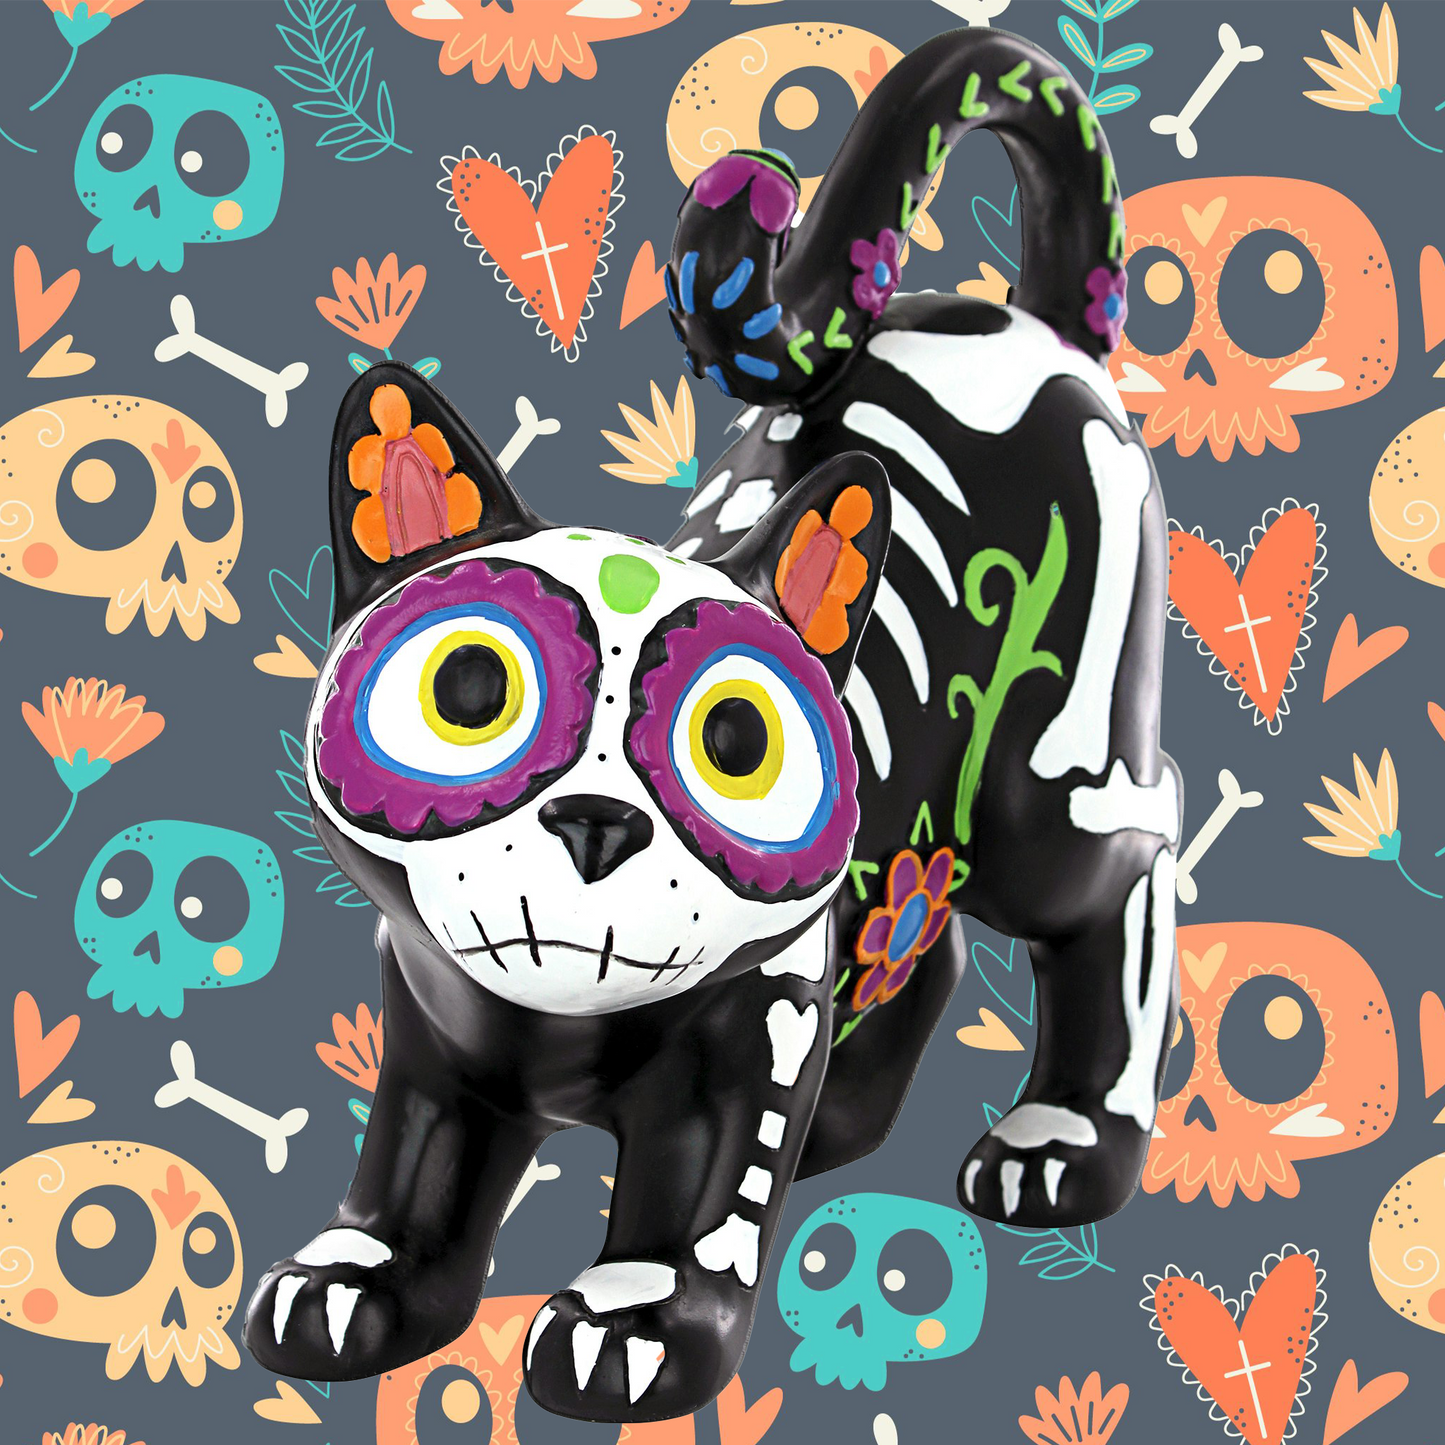 Celebrate  Dia de los Muertos With This Gatto Kitty Skeleton Statute